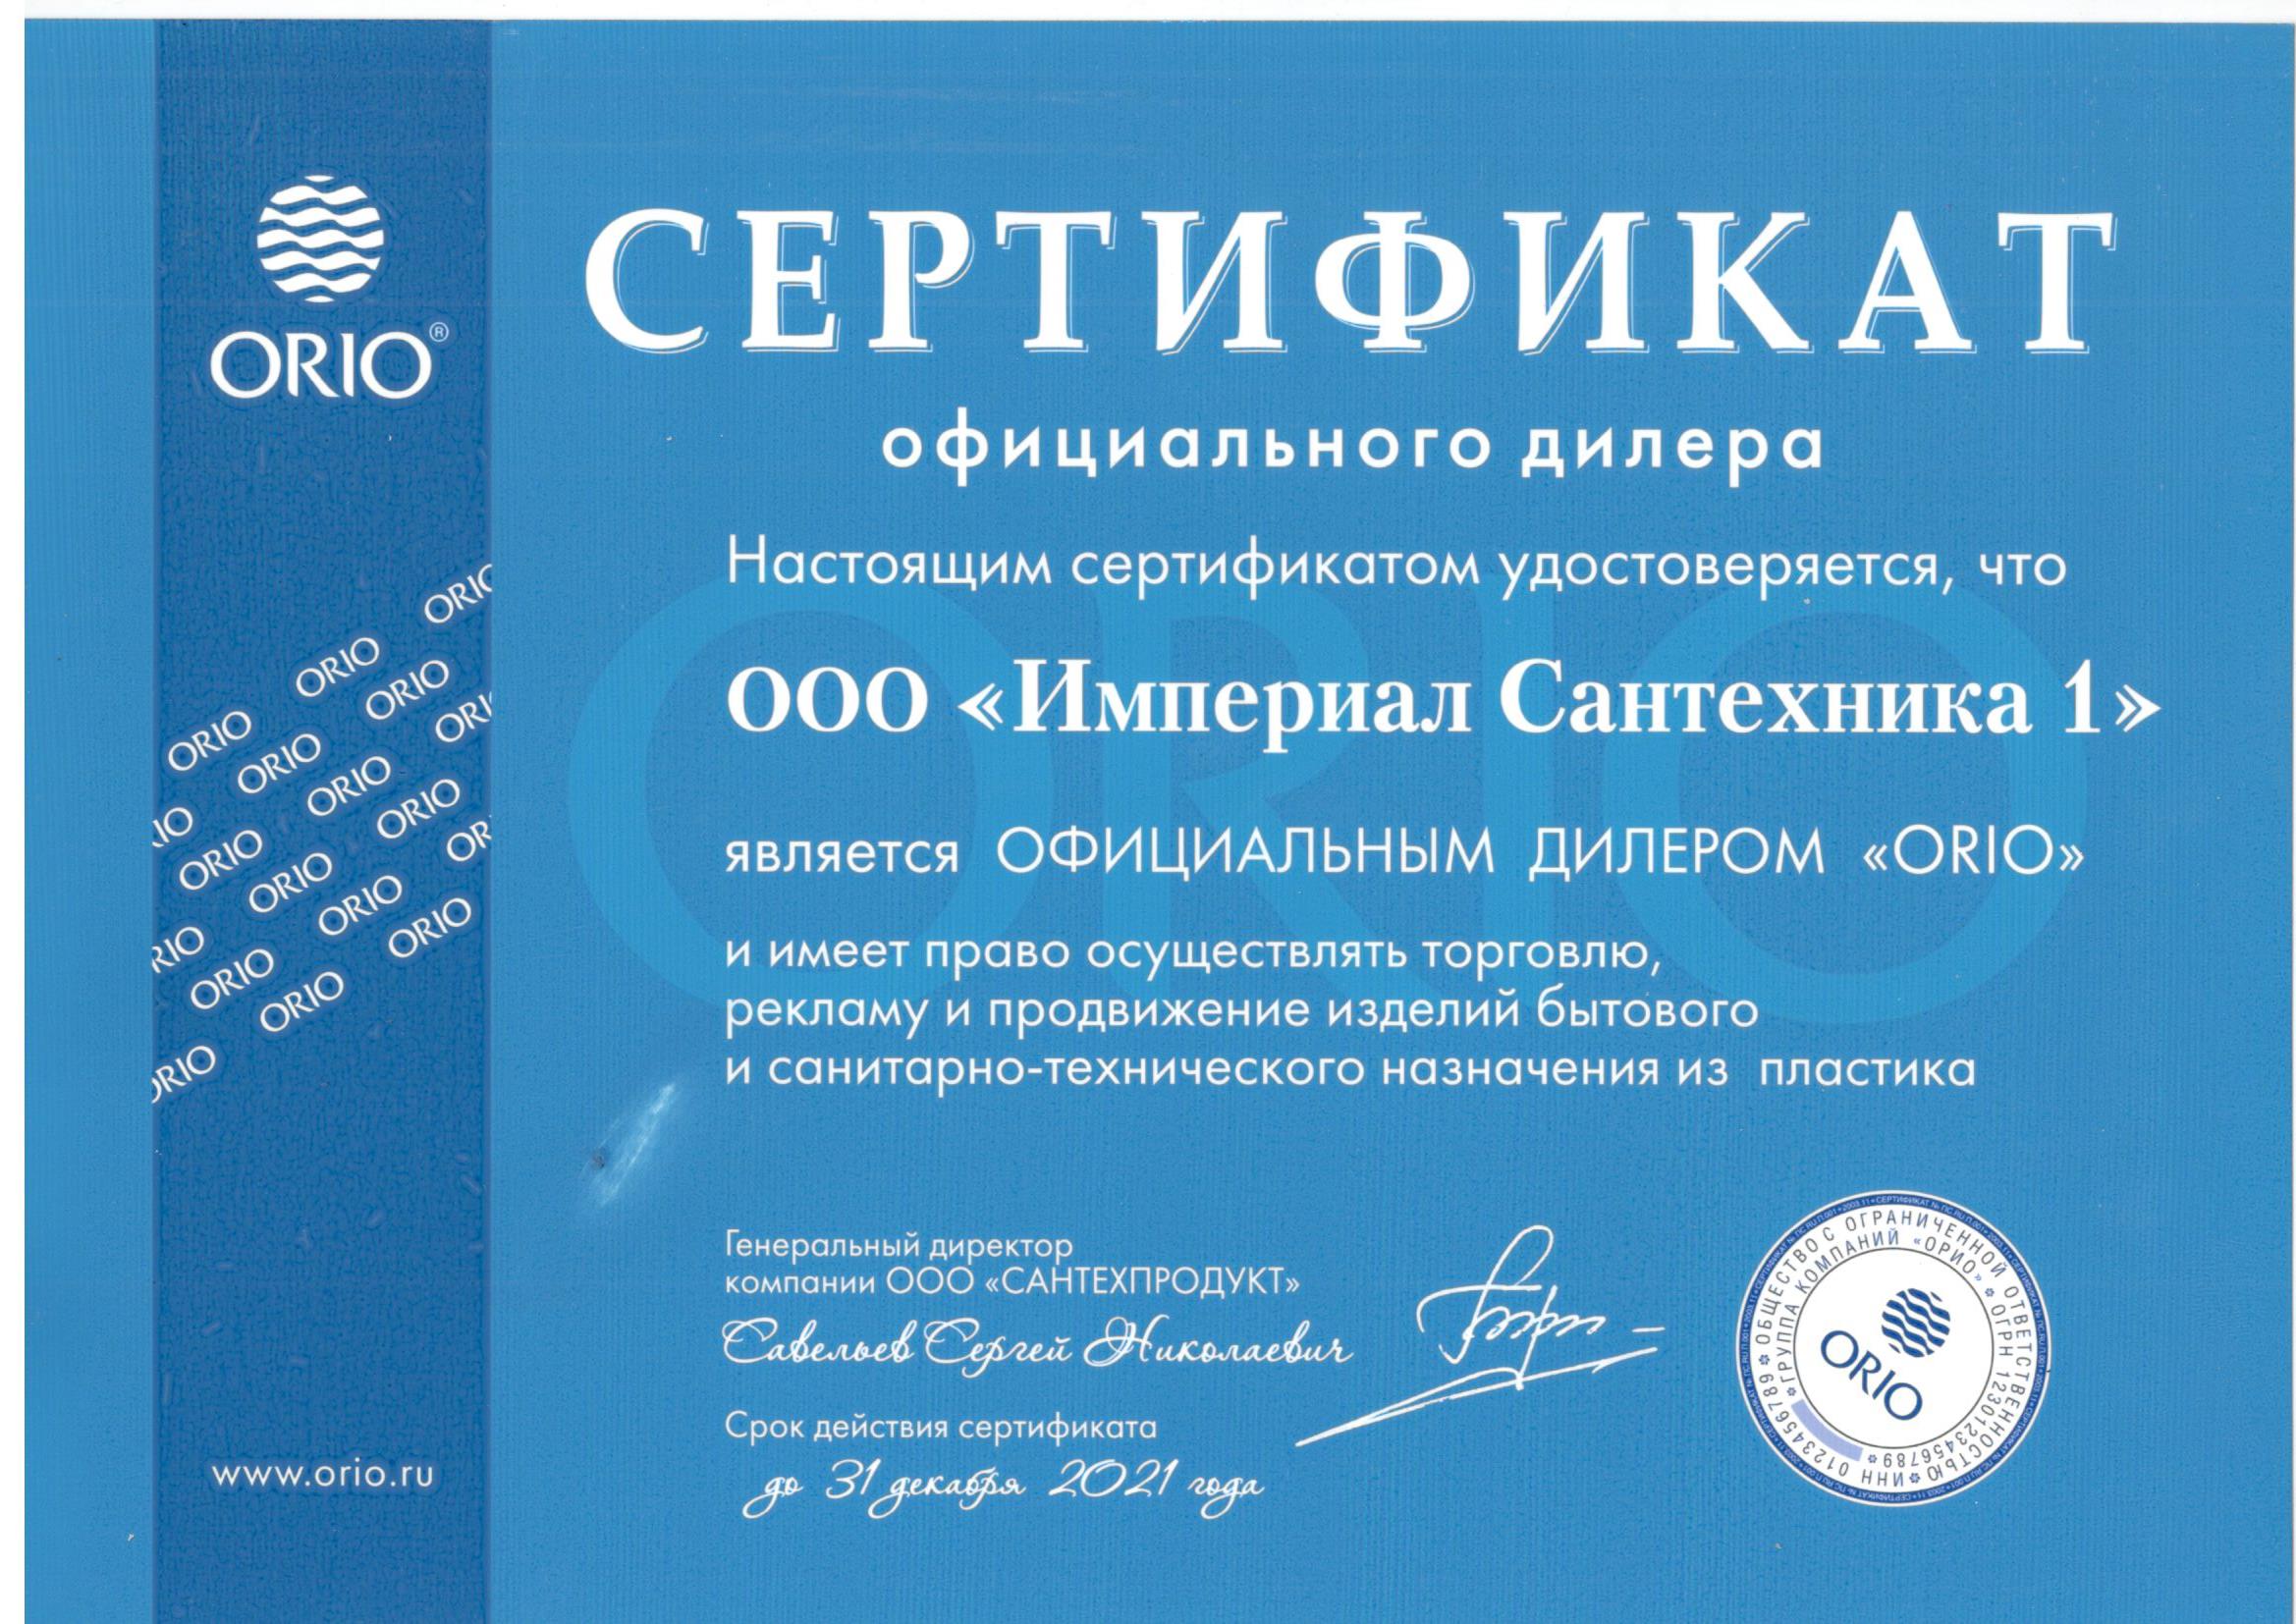 Сертификат официального дилера ОРИО.jpg